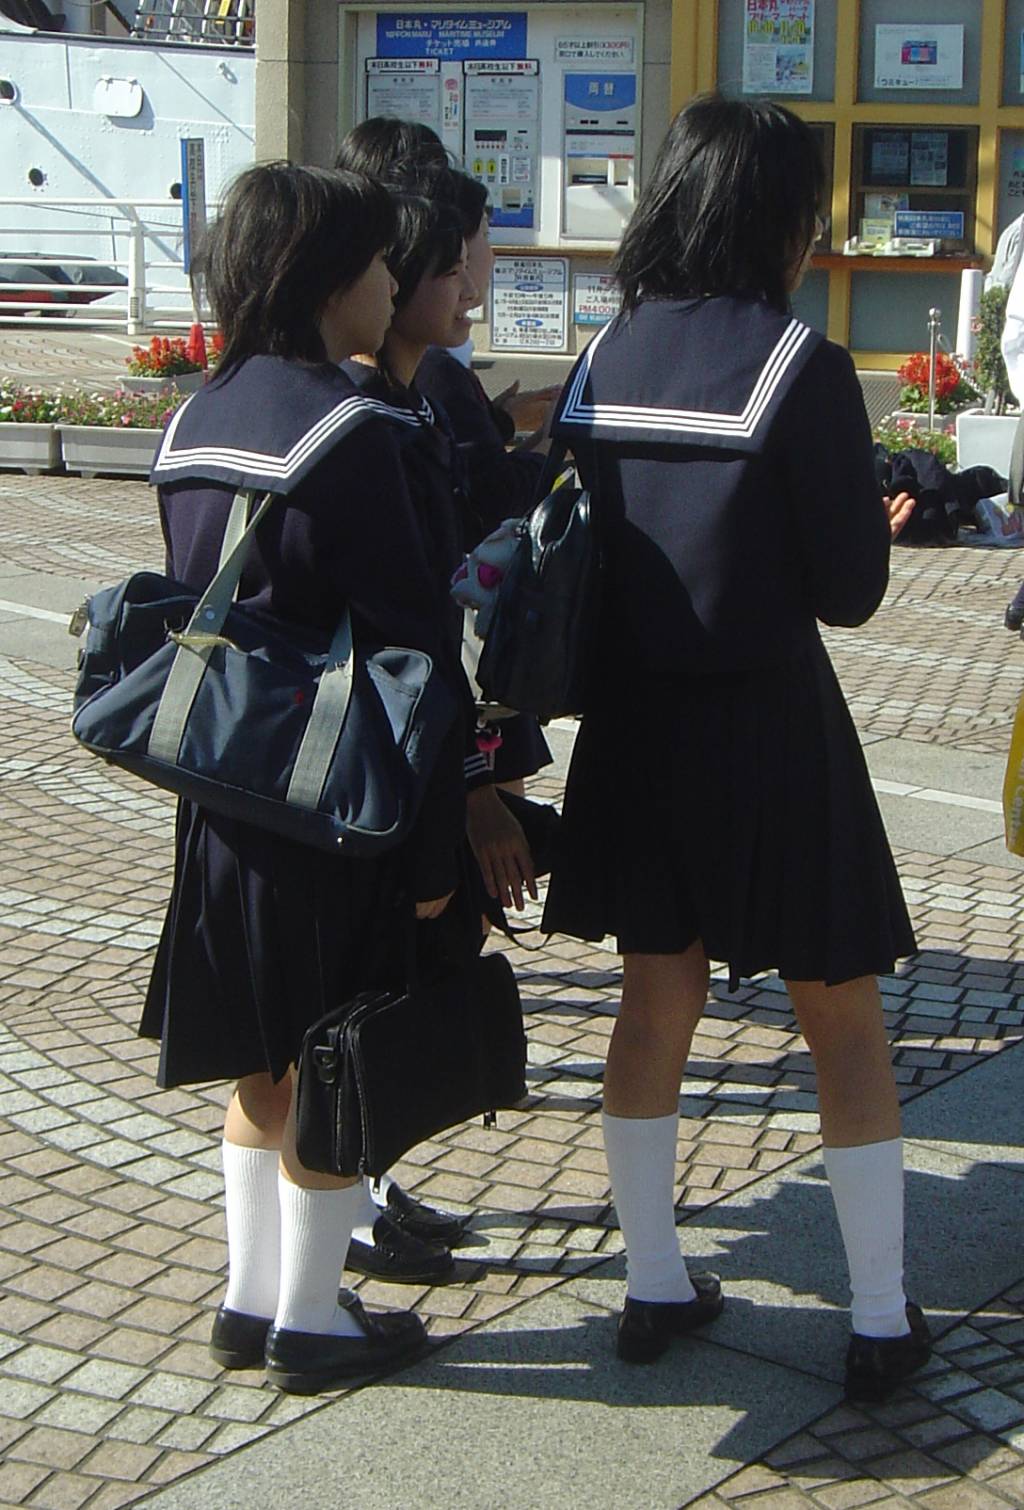 Essay school uniforms